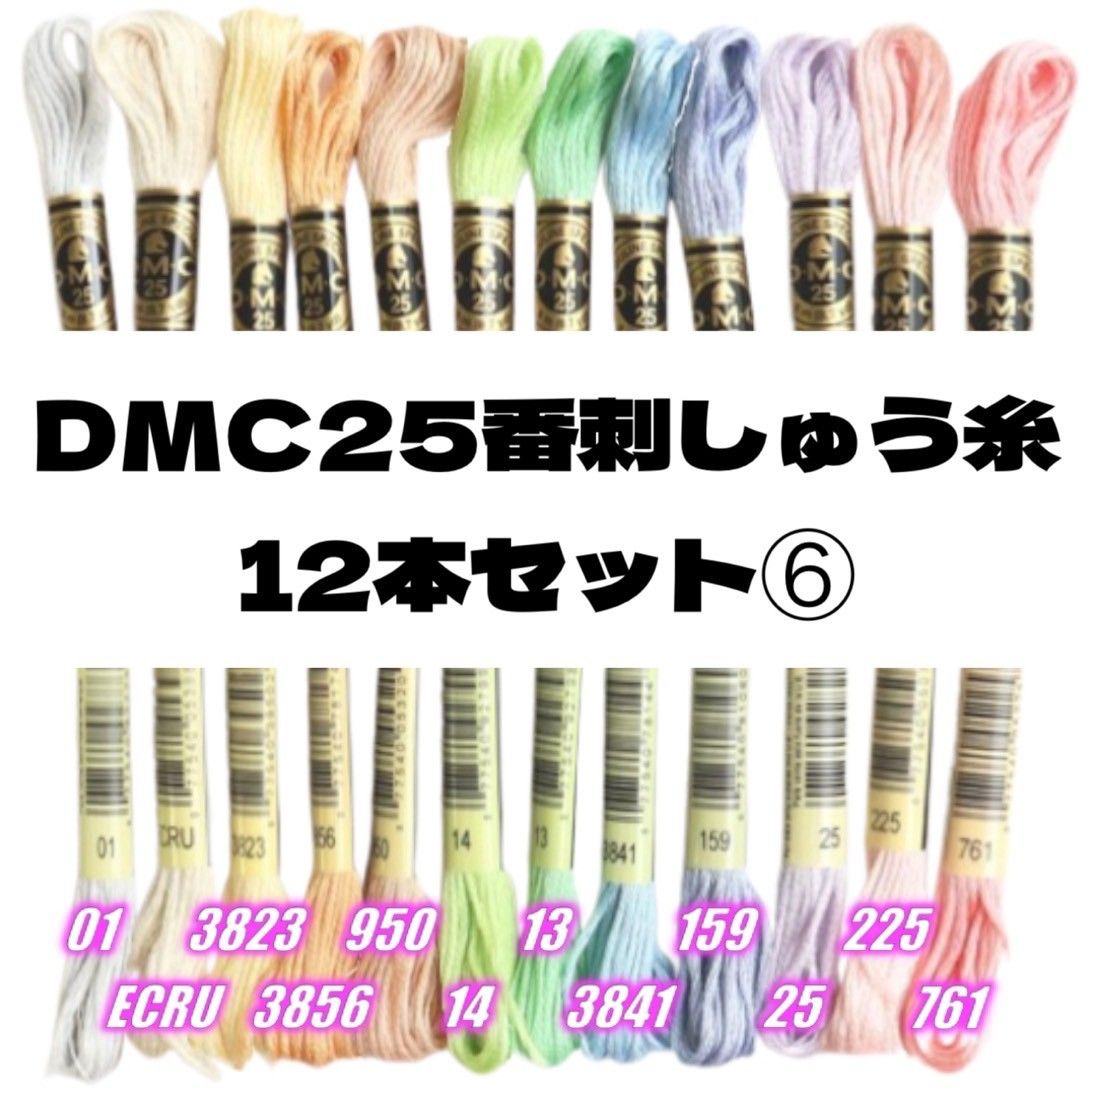 DMC25 刺しゅう糸 #25 12本セット⑥